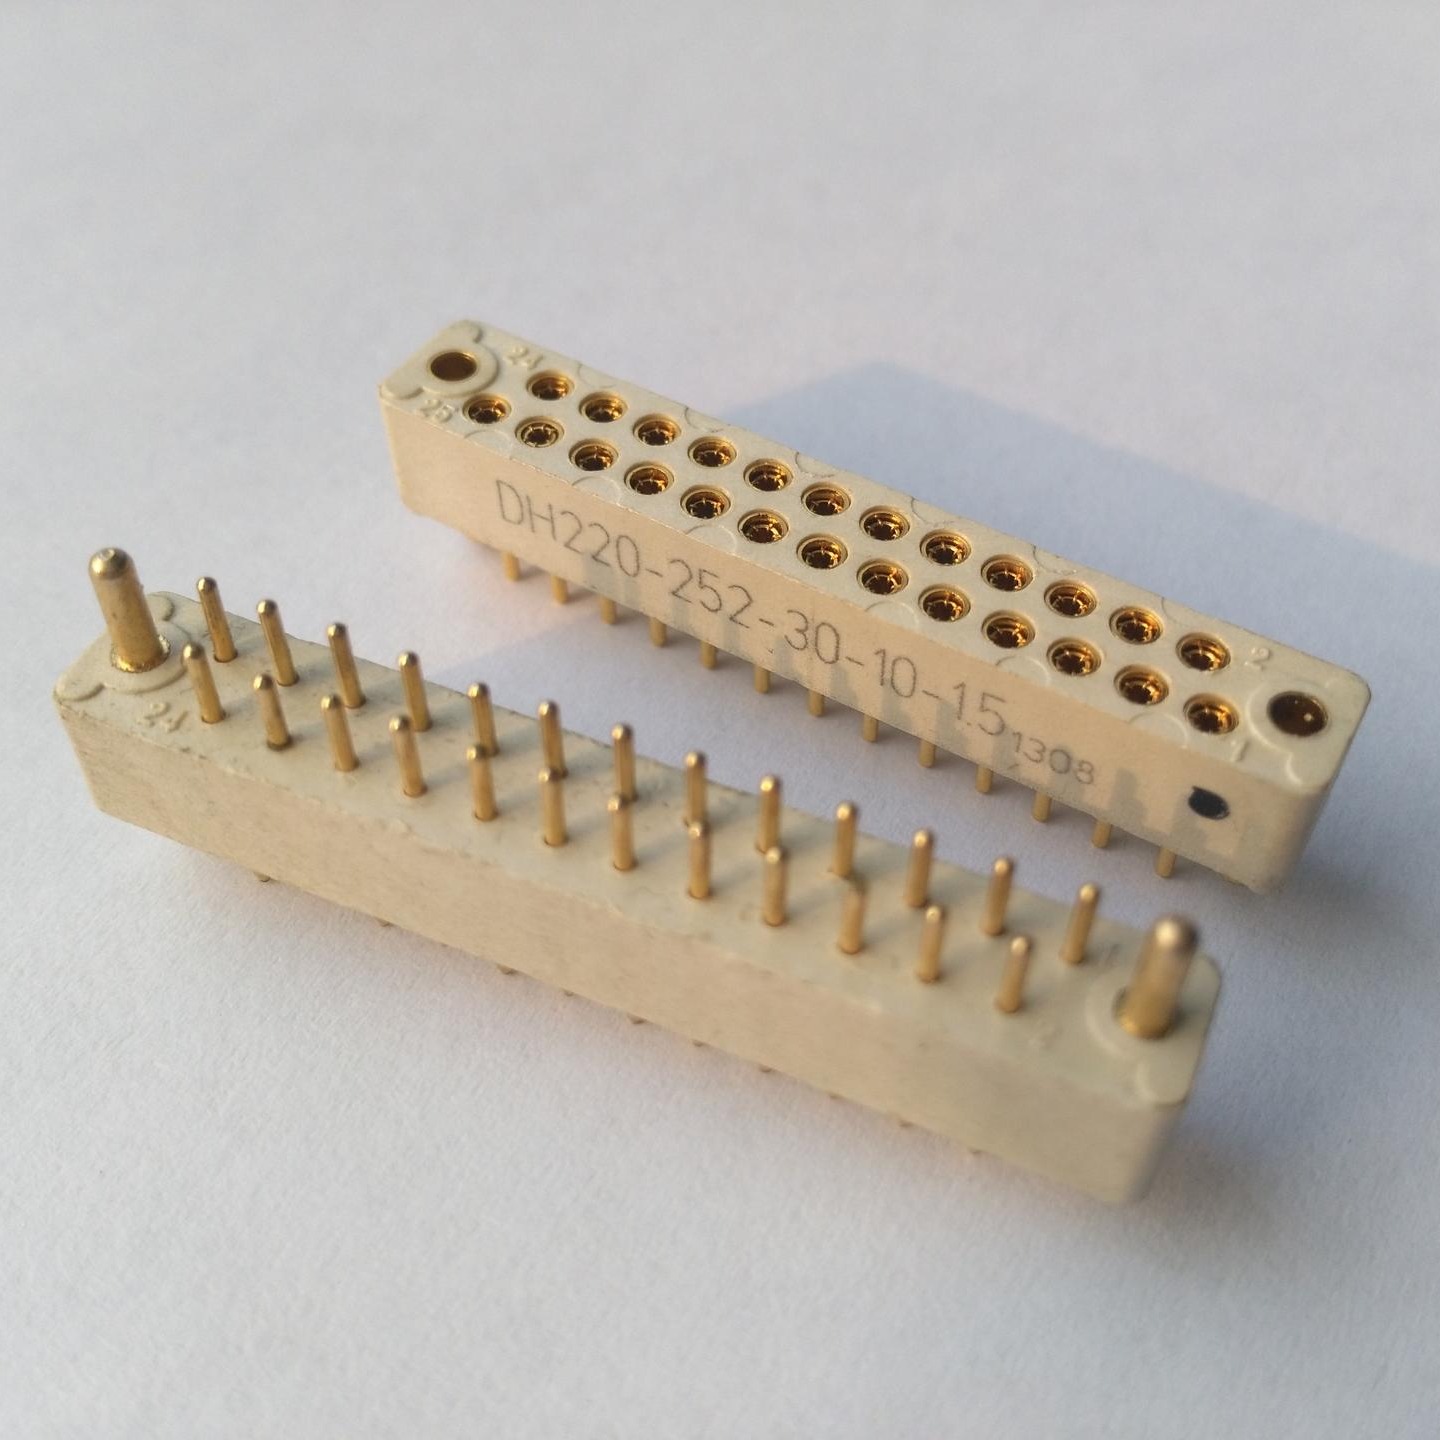 25芯线簧印制板连接器生产厂家 东普电子 方形线簧连接器 精密连接器